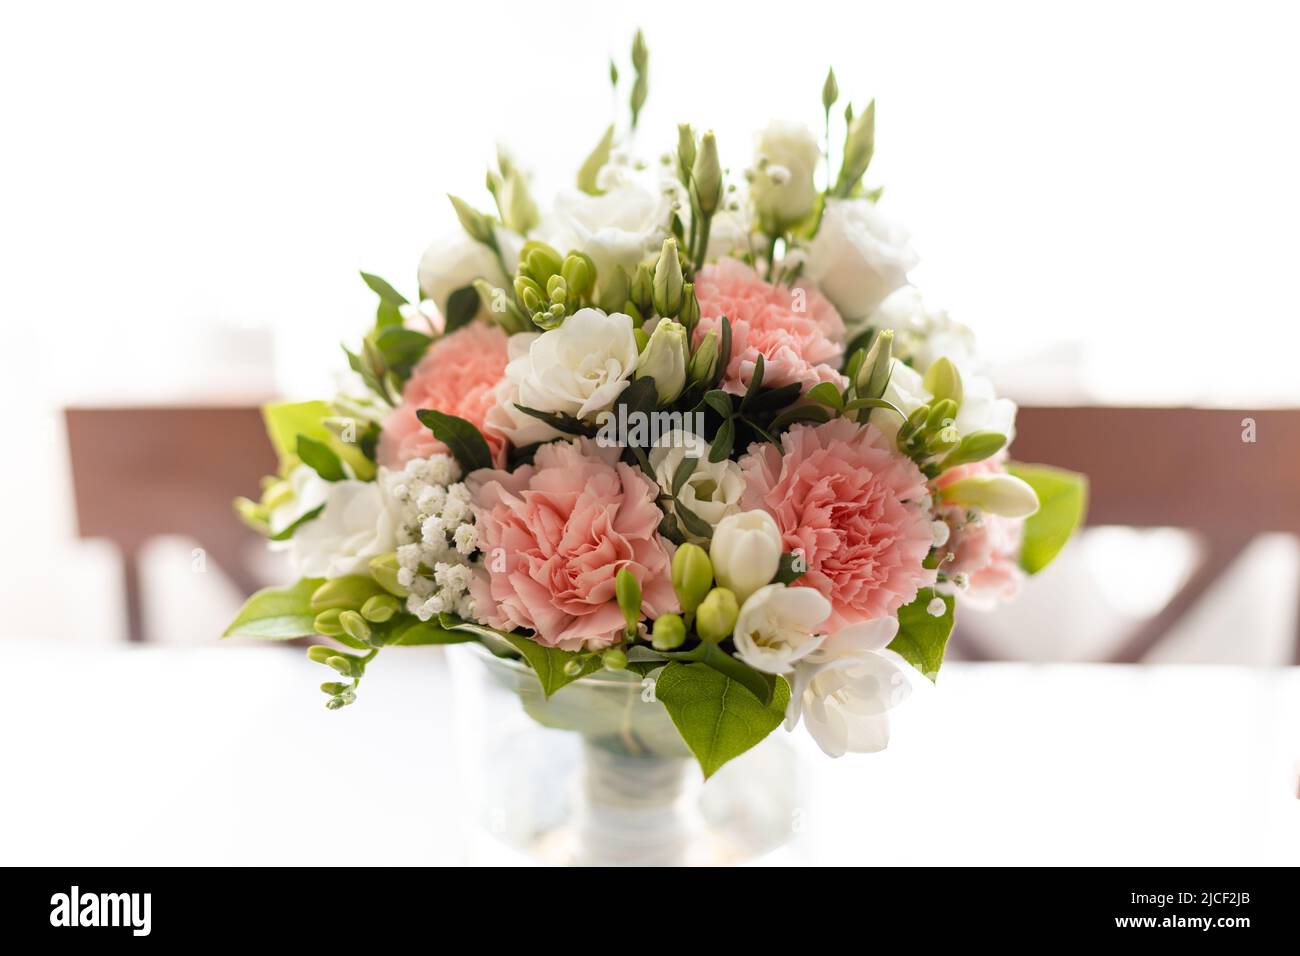 Rose frais, bouquet de fleurs de rose blanc dans vase transparent sur table avec imprimé nappe. Mariage, invitation de mariage Banque D'Images